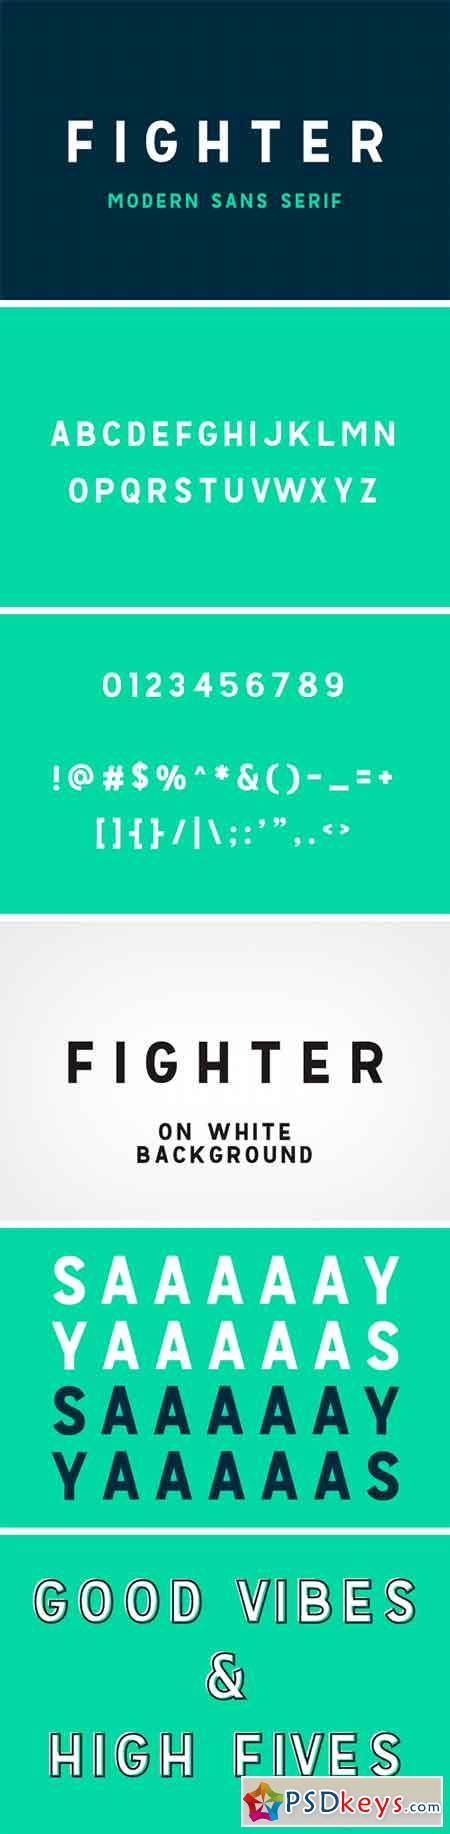 Fighter - Moder Sans Serif Font 1581434